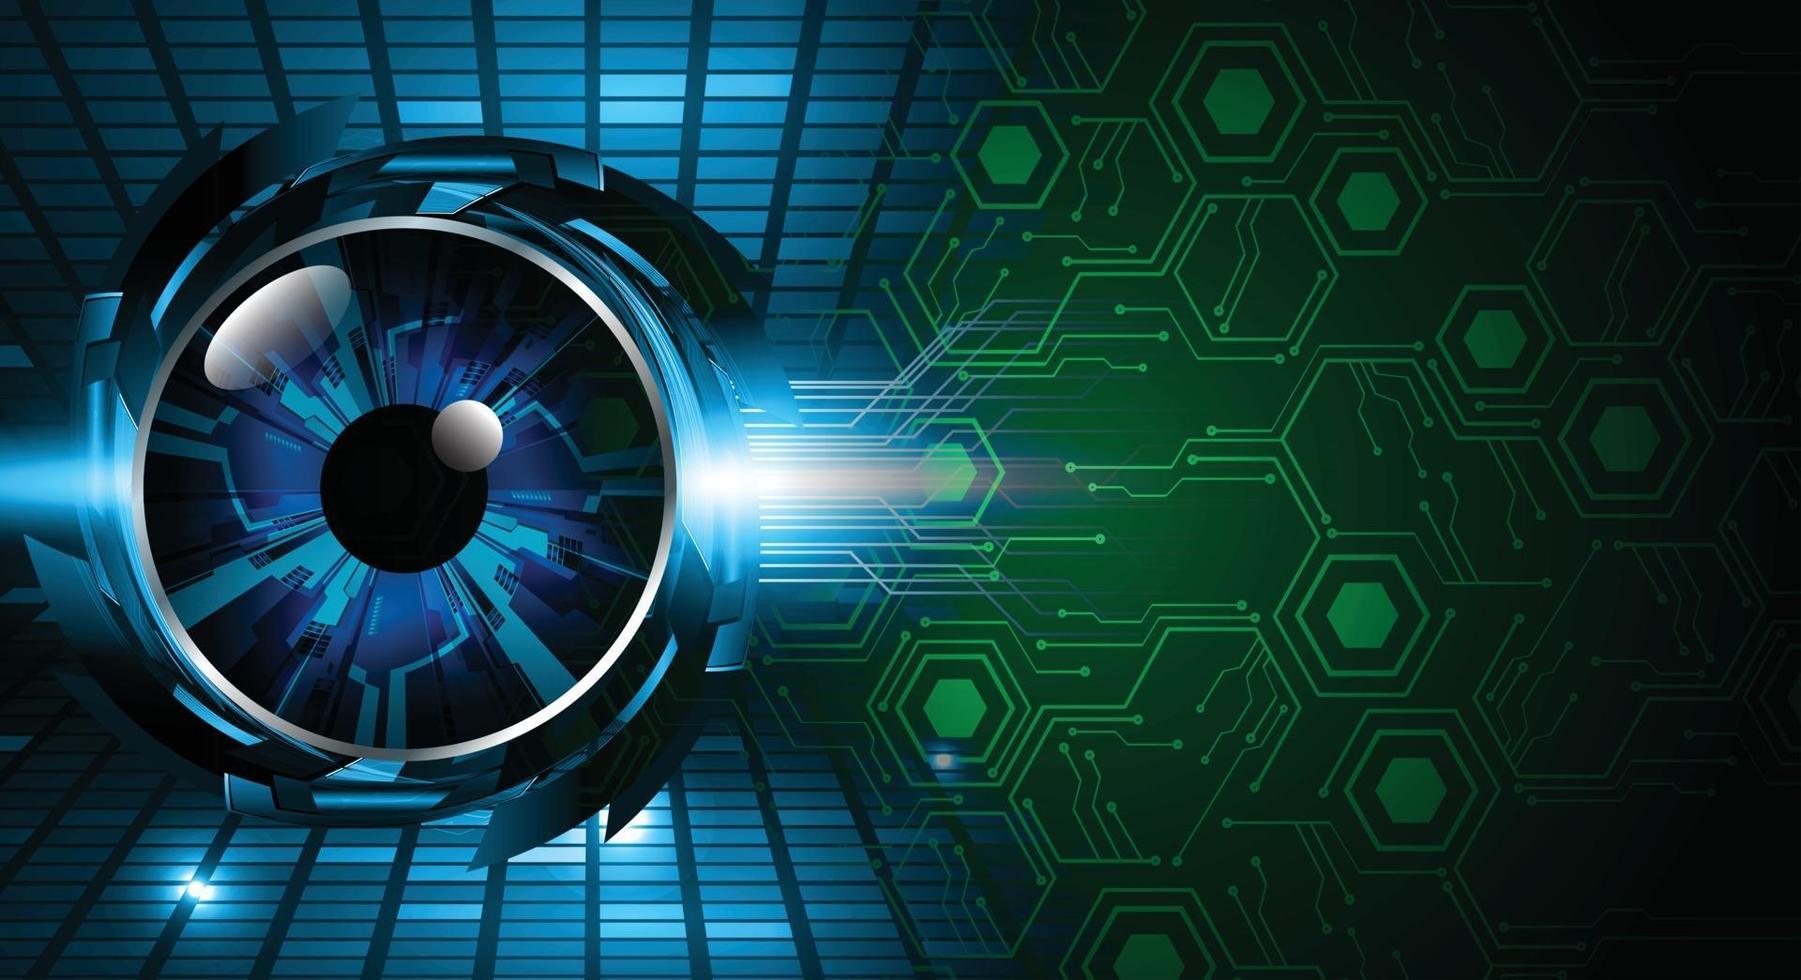 blauw oog cyber circuit toekomstige technologie concept achtergrond vector